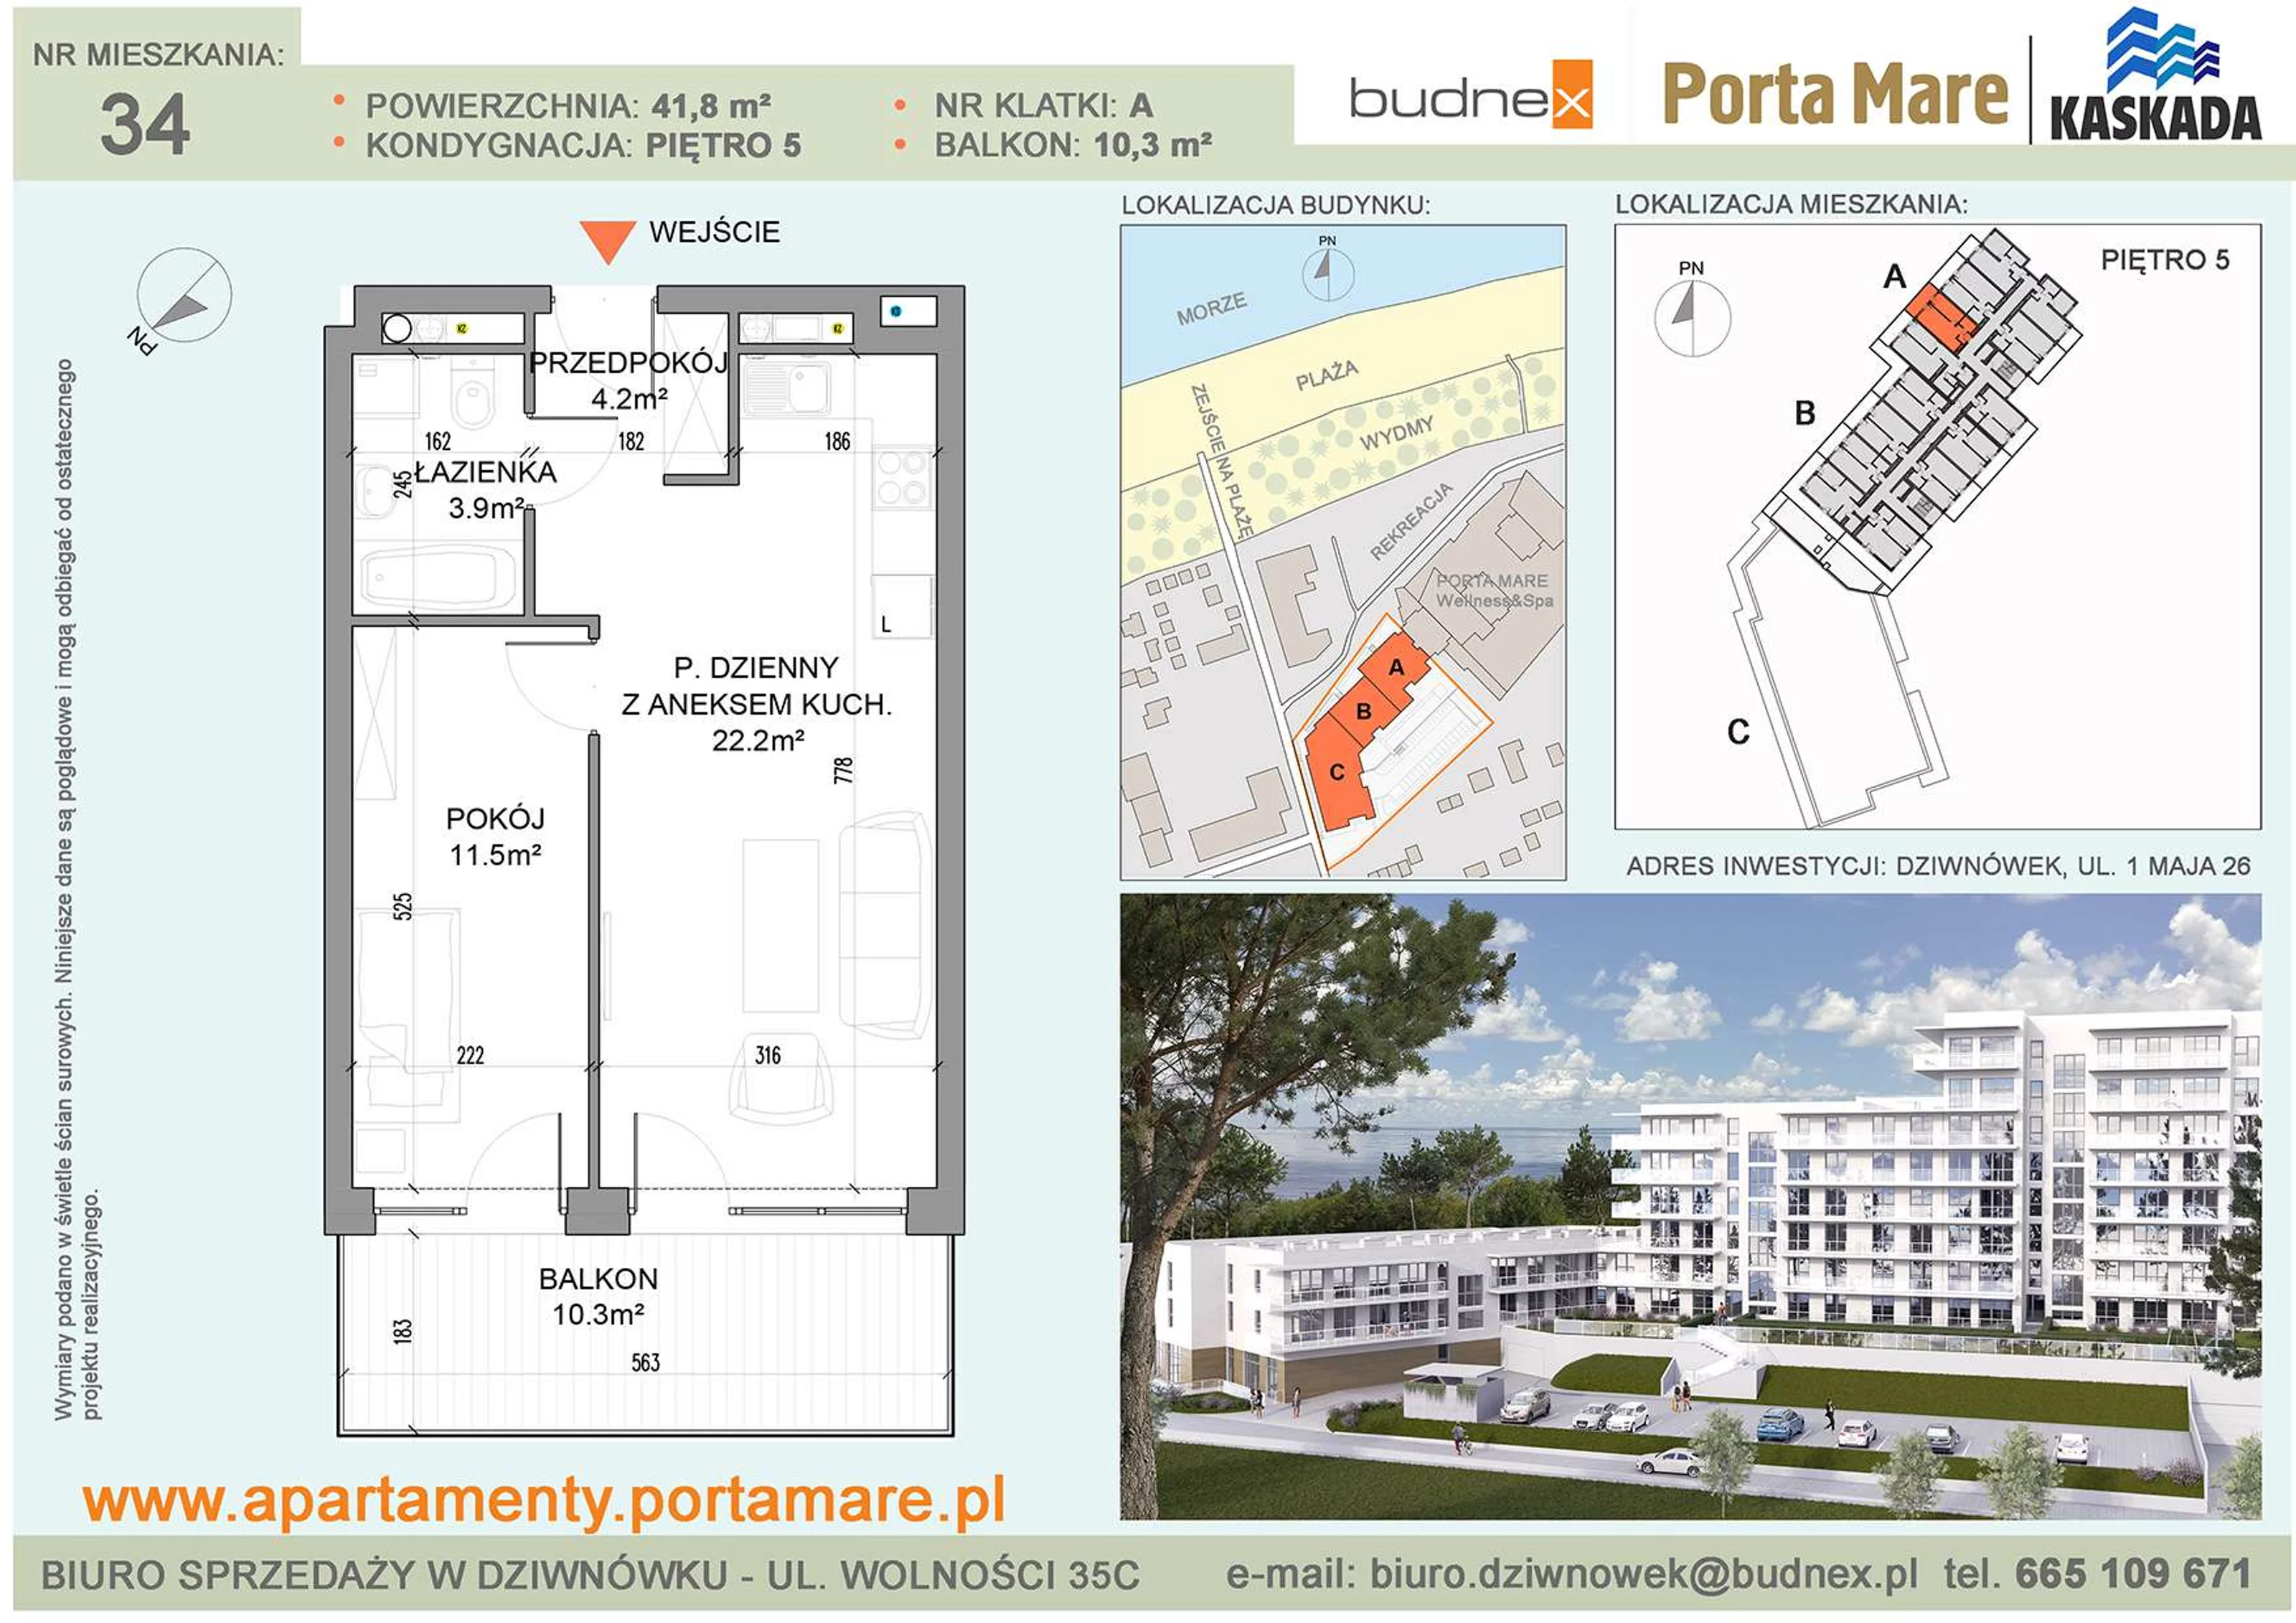 Mieszkanie 41,80 m², piętro 5, oferta nr A/M34, Porta Mare Kaskada, Dziwnówek, ul. 1 Maja 26